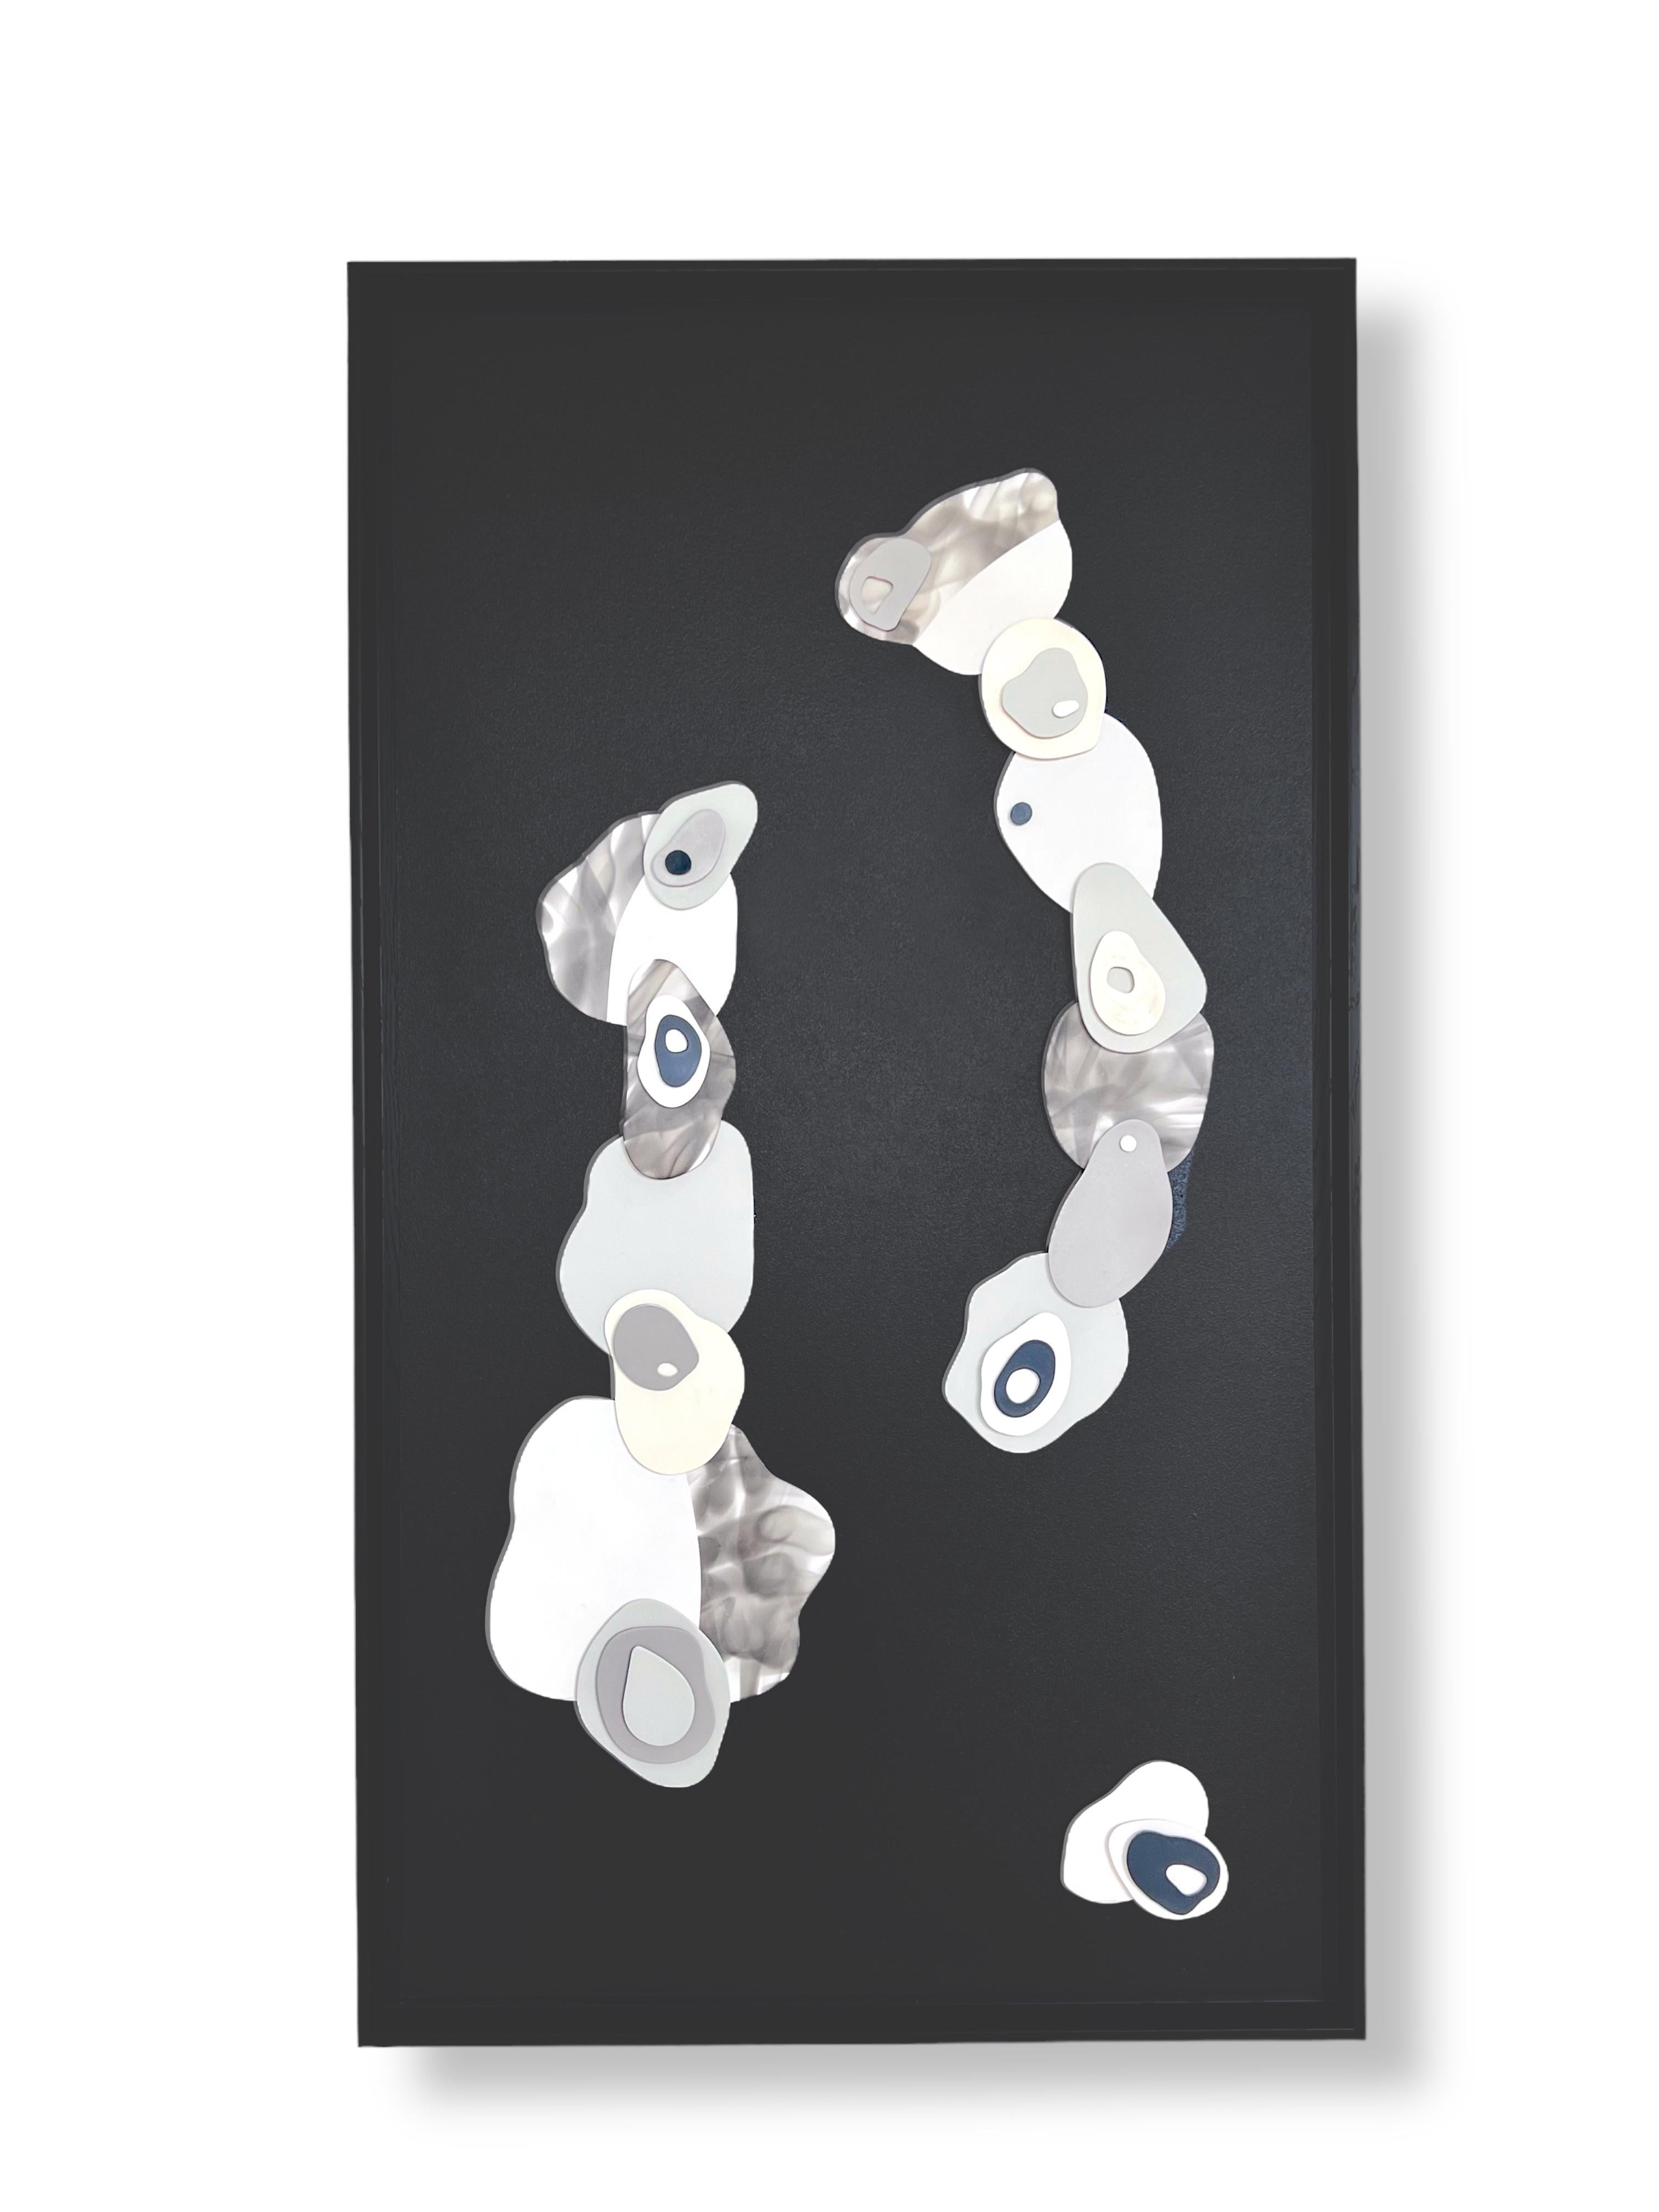 s Nuages II. Formes abstraites, minimalistes et en plâtre 3D sur bois avec cadre noir - Minimaliste Mixed Media Art par Cari Cohen